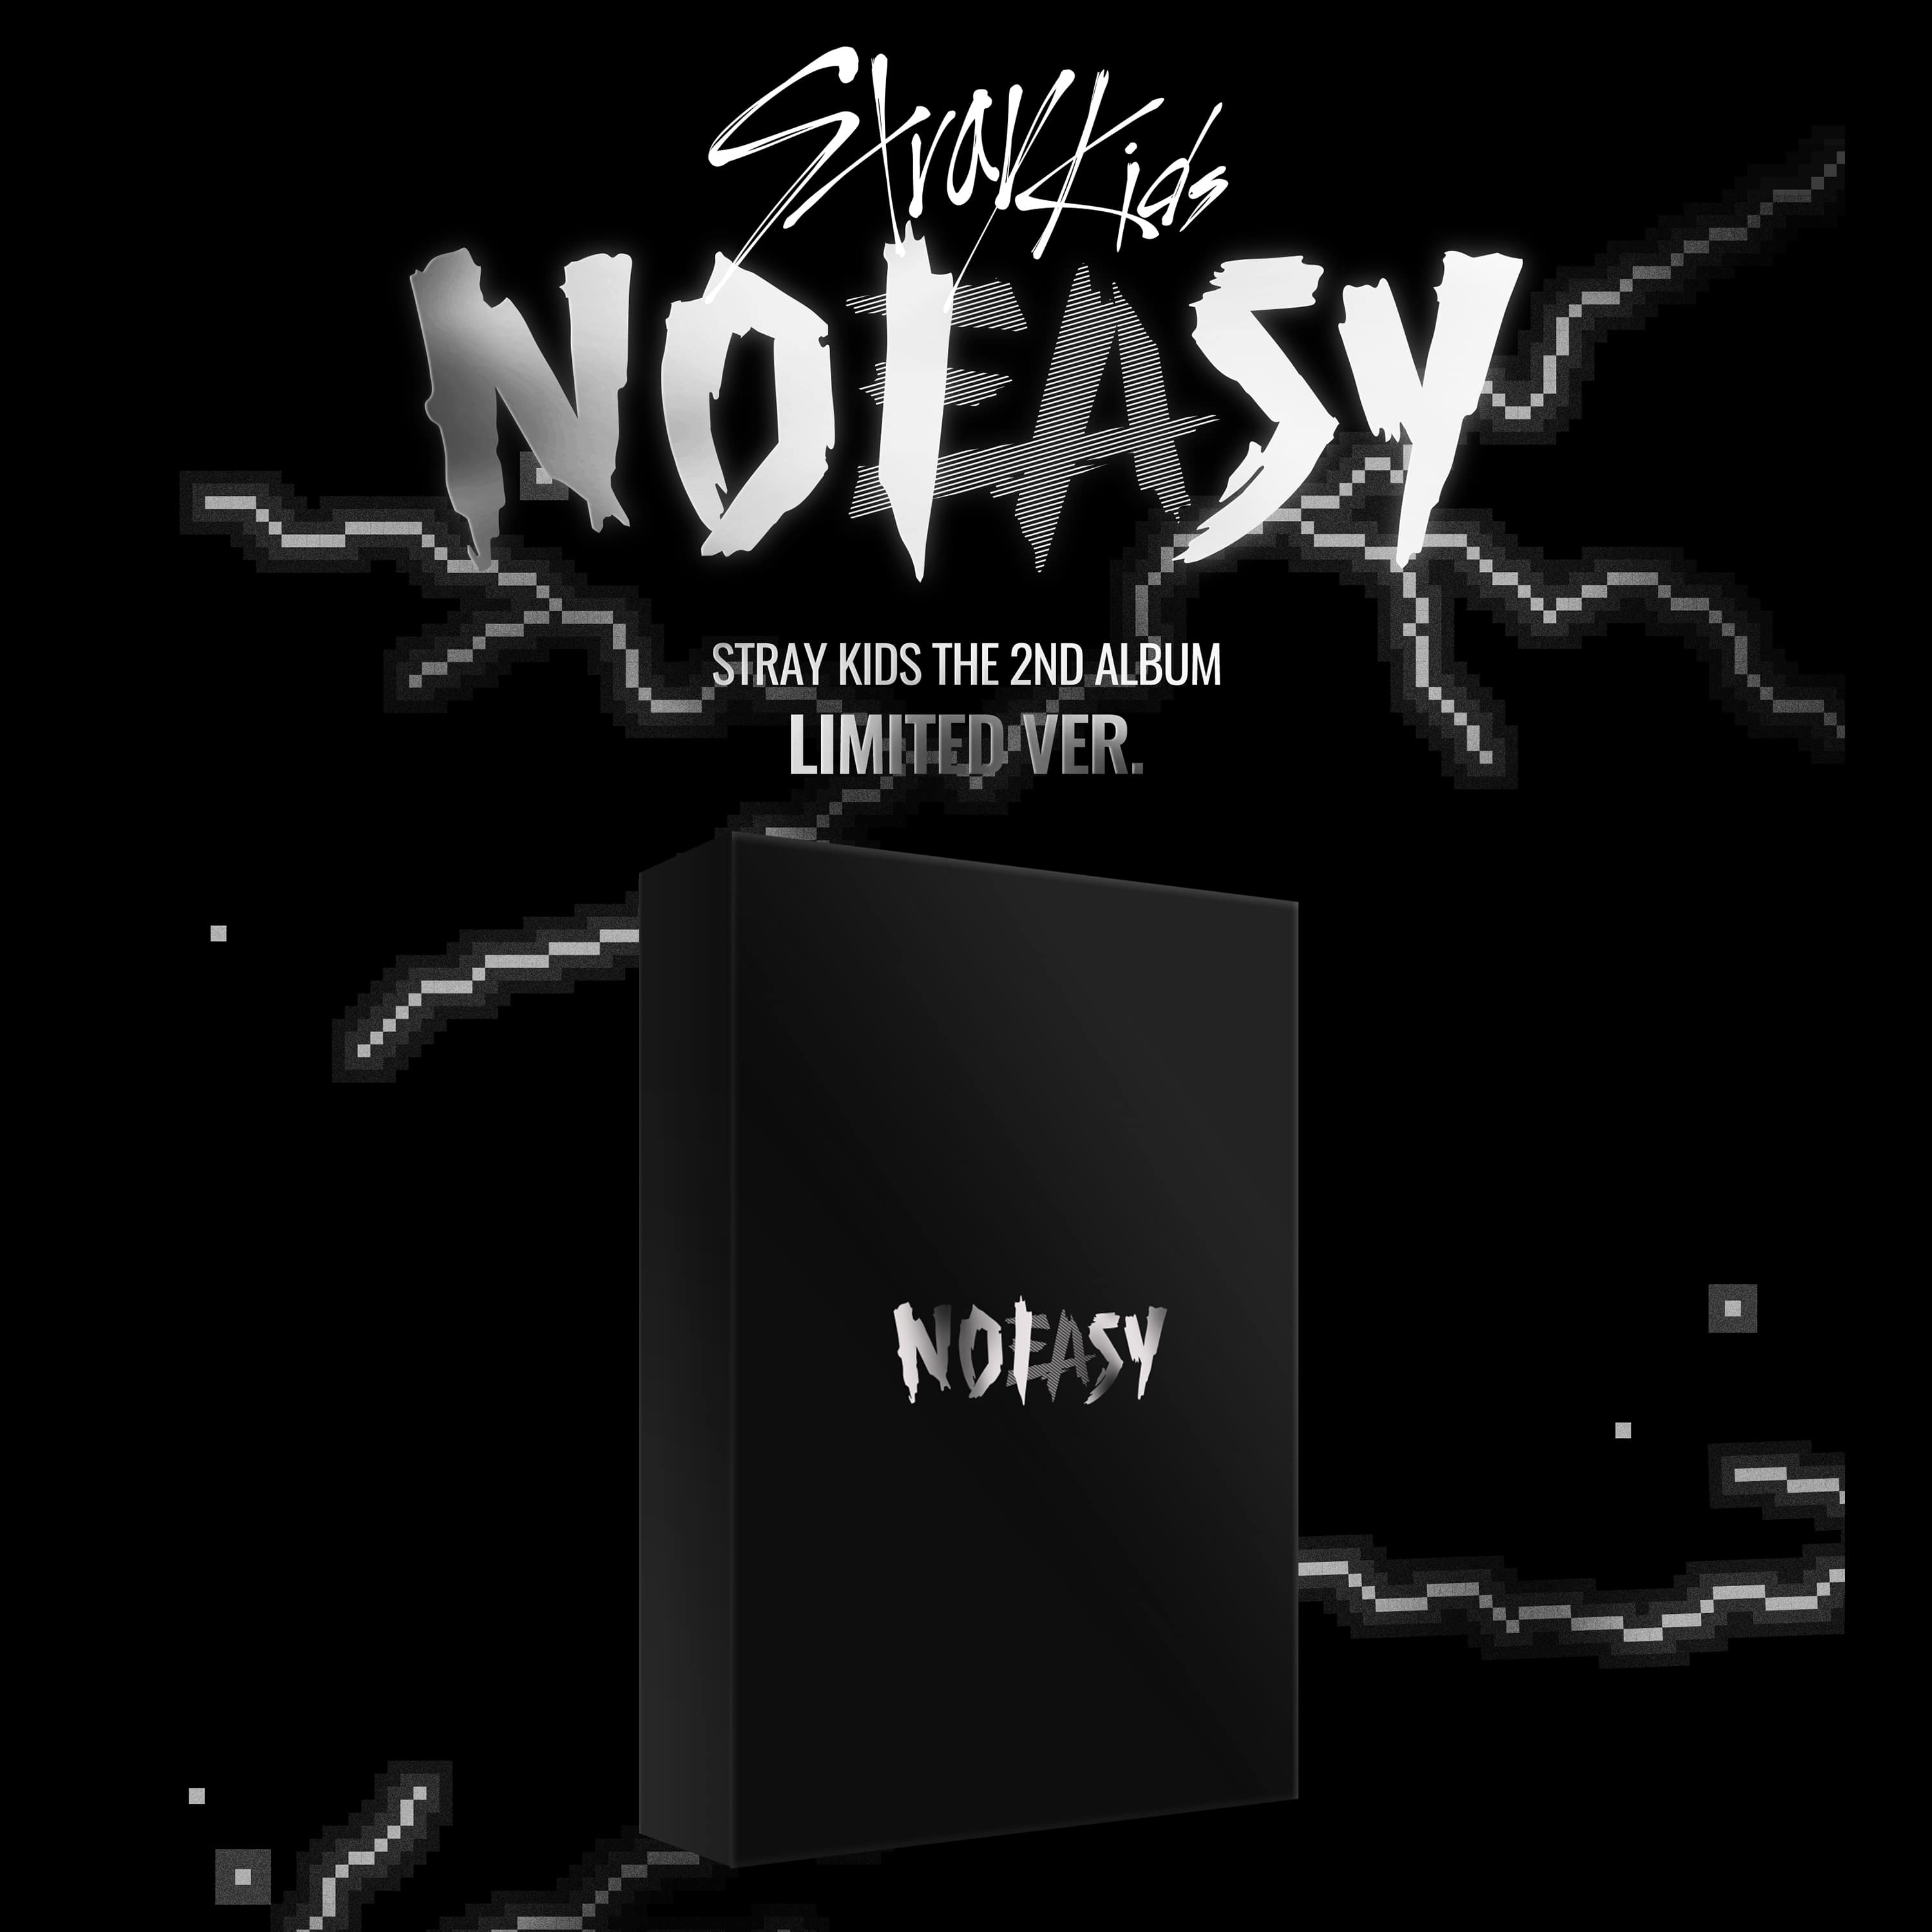 스트레이 키즈(Stray Kids) - THE 2ND ALBUM [NOEASY] (LIMITED VER.)케이팝스토어(kpop store)